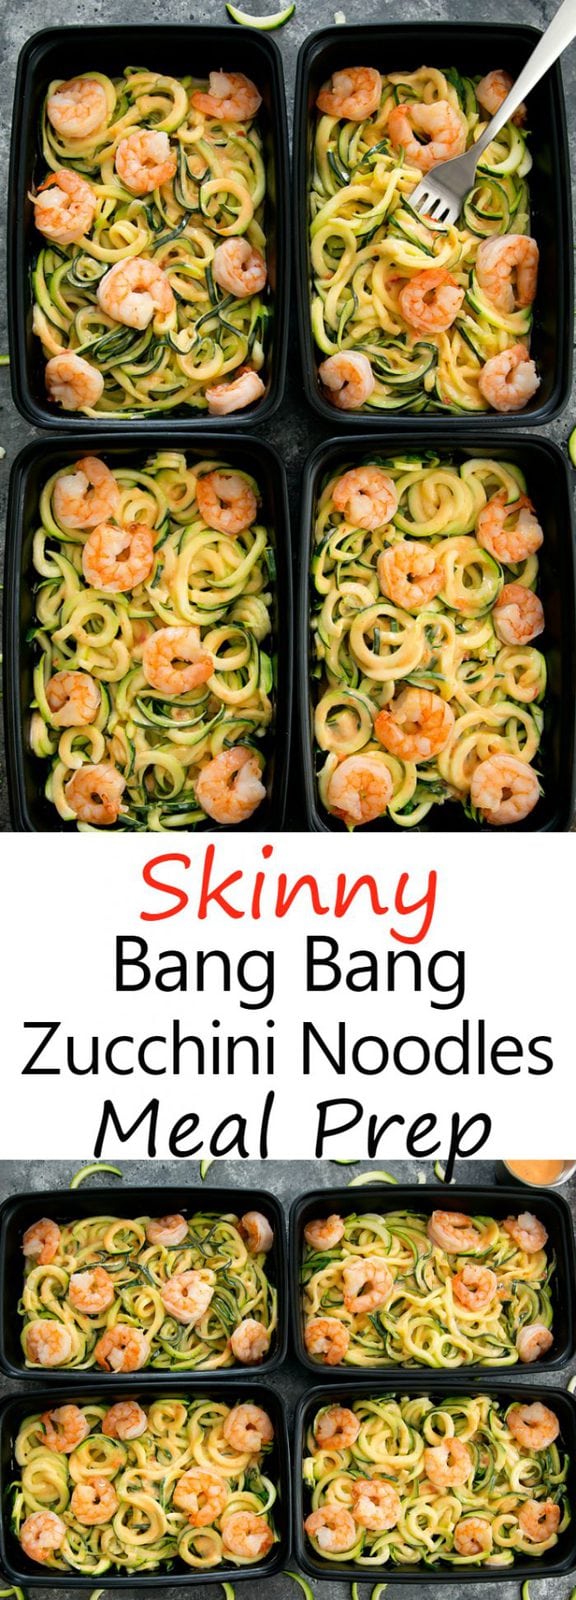 Skinny Bang Bang Zucchini Noodles Meal Prep